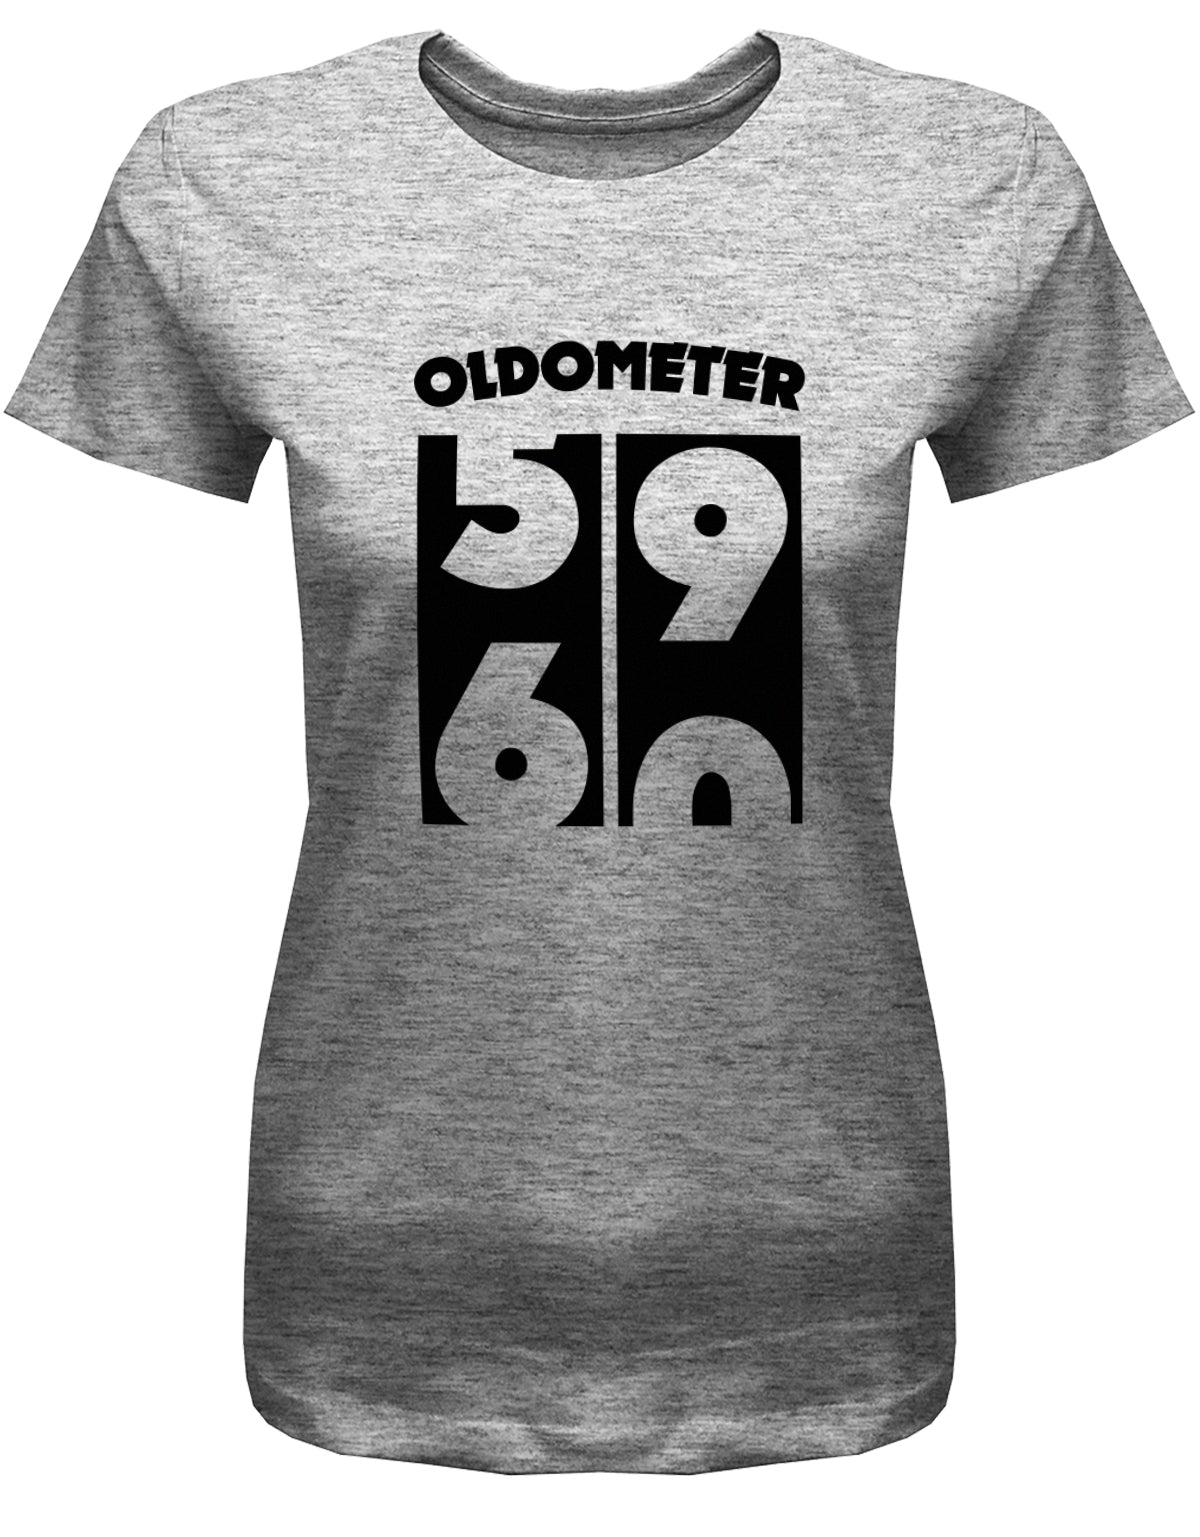 Lustiges T-Shirt zum 60 Geburtstag für die Frau Bedruckt mit Oldometer Wechsel von 59 zu 60 Jahren. Grau